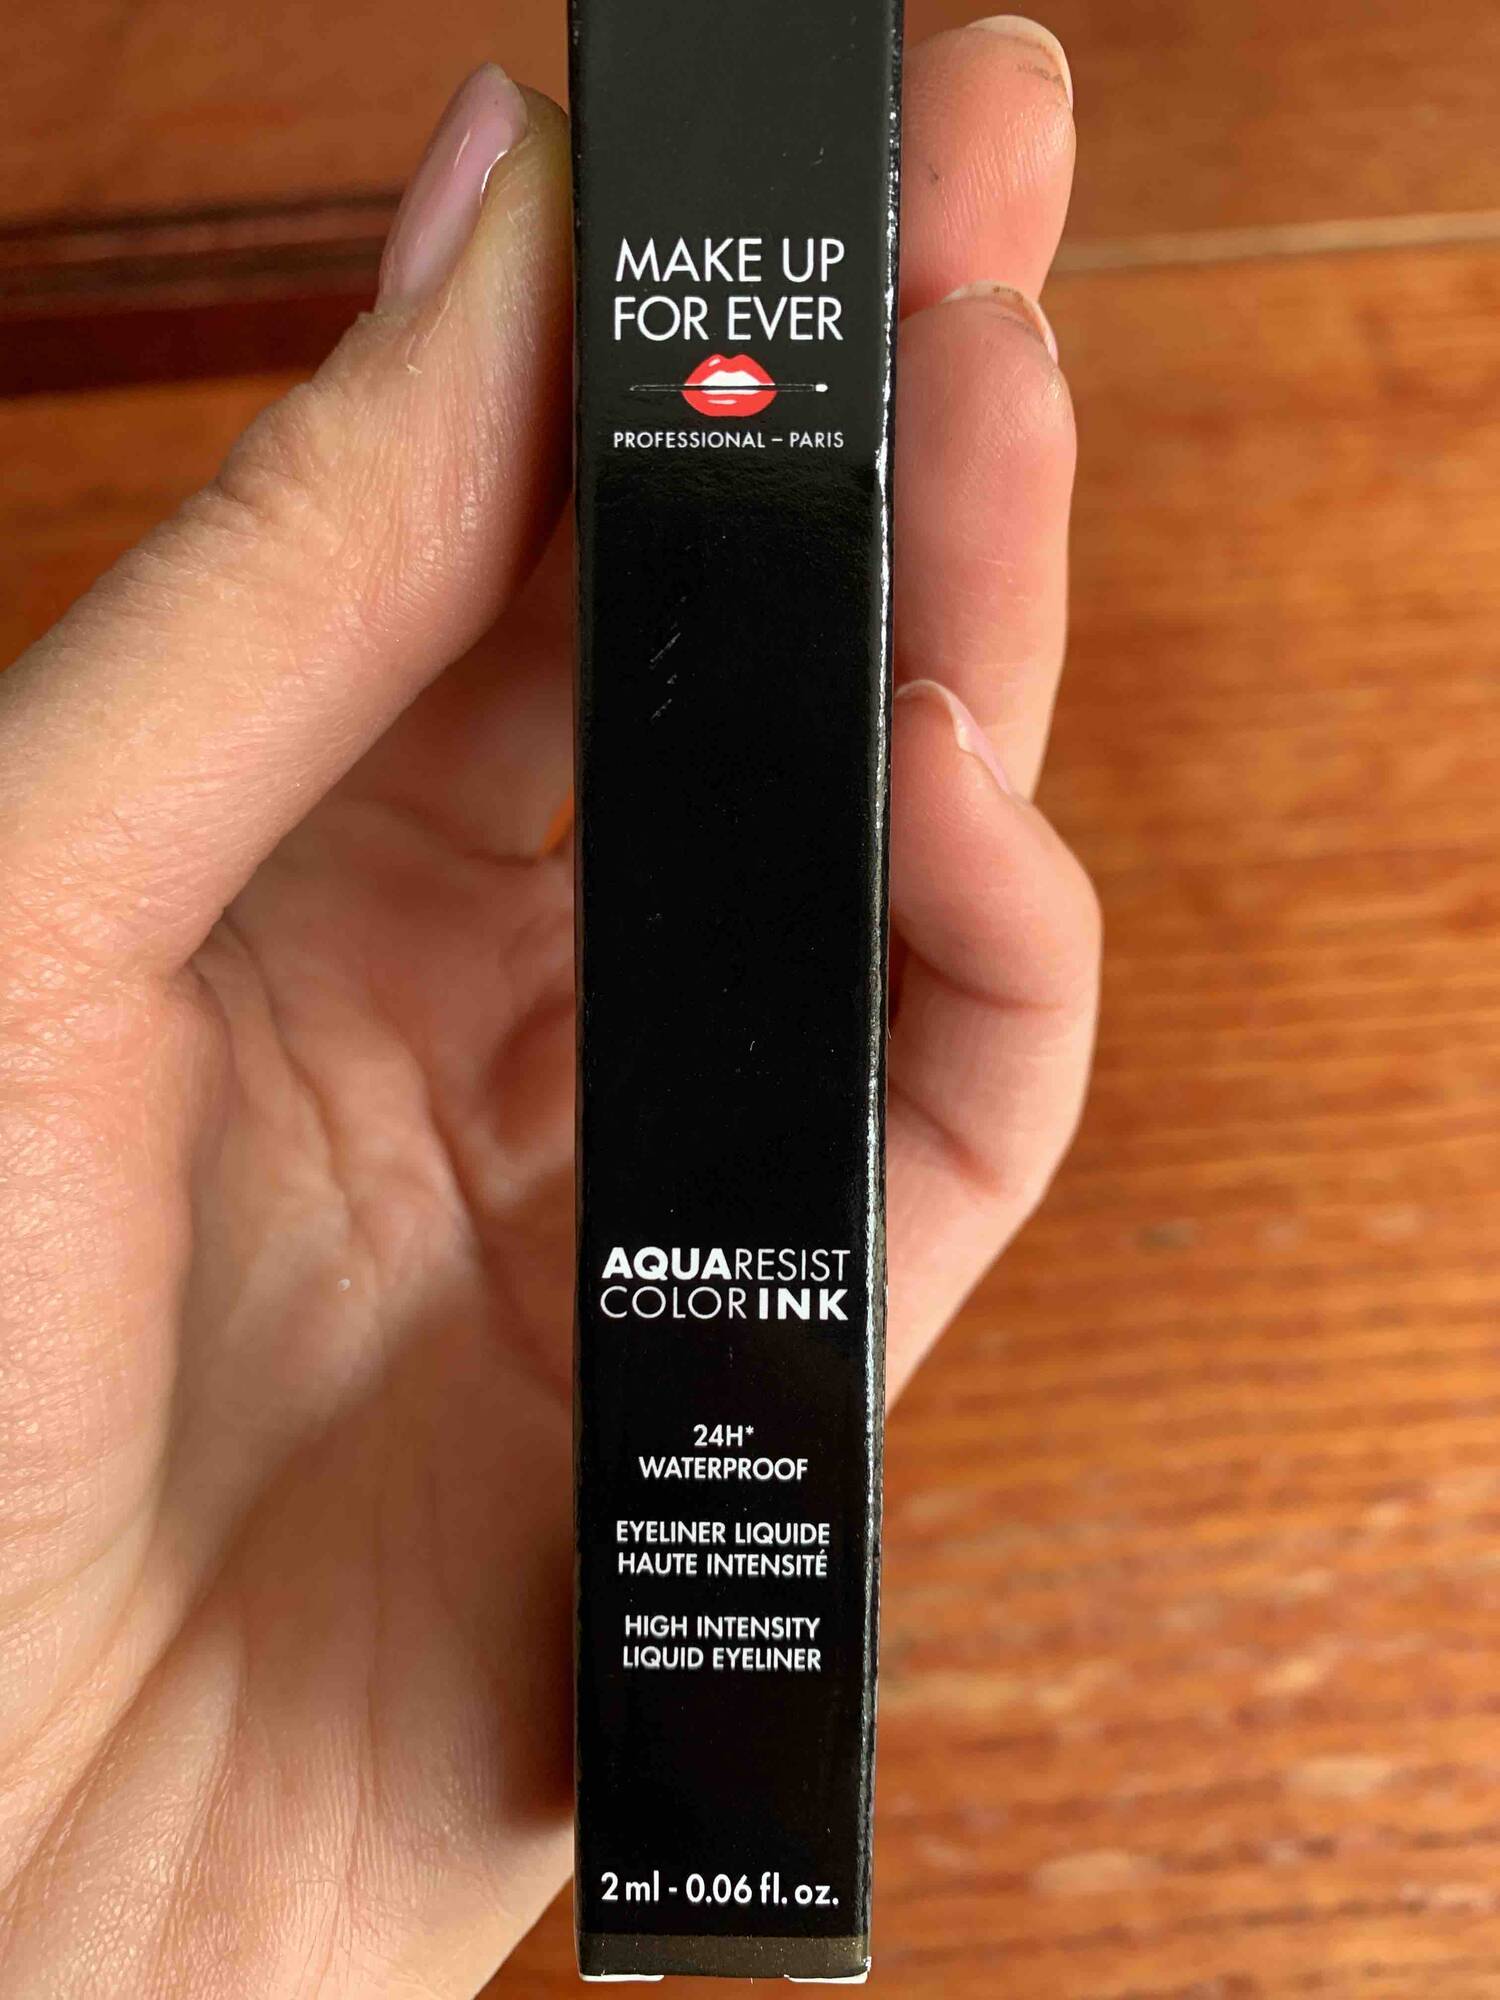 MAKE UP FOR EVER - Aqua resis color ink - Eyeliner liquide 24h